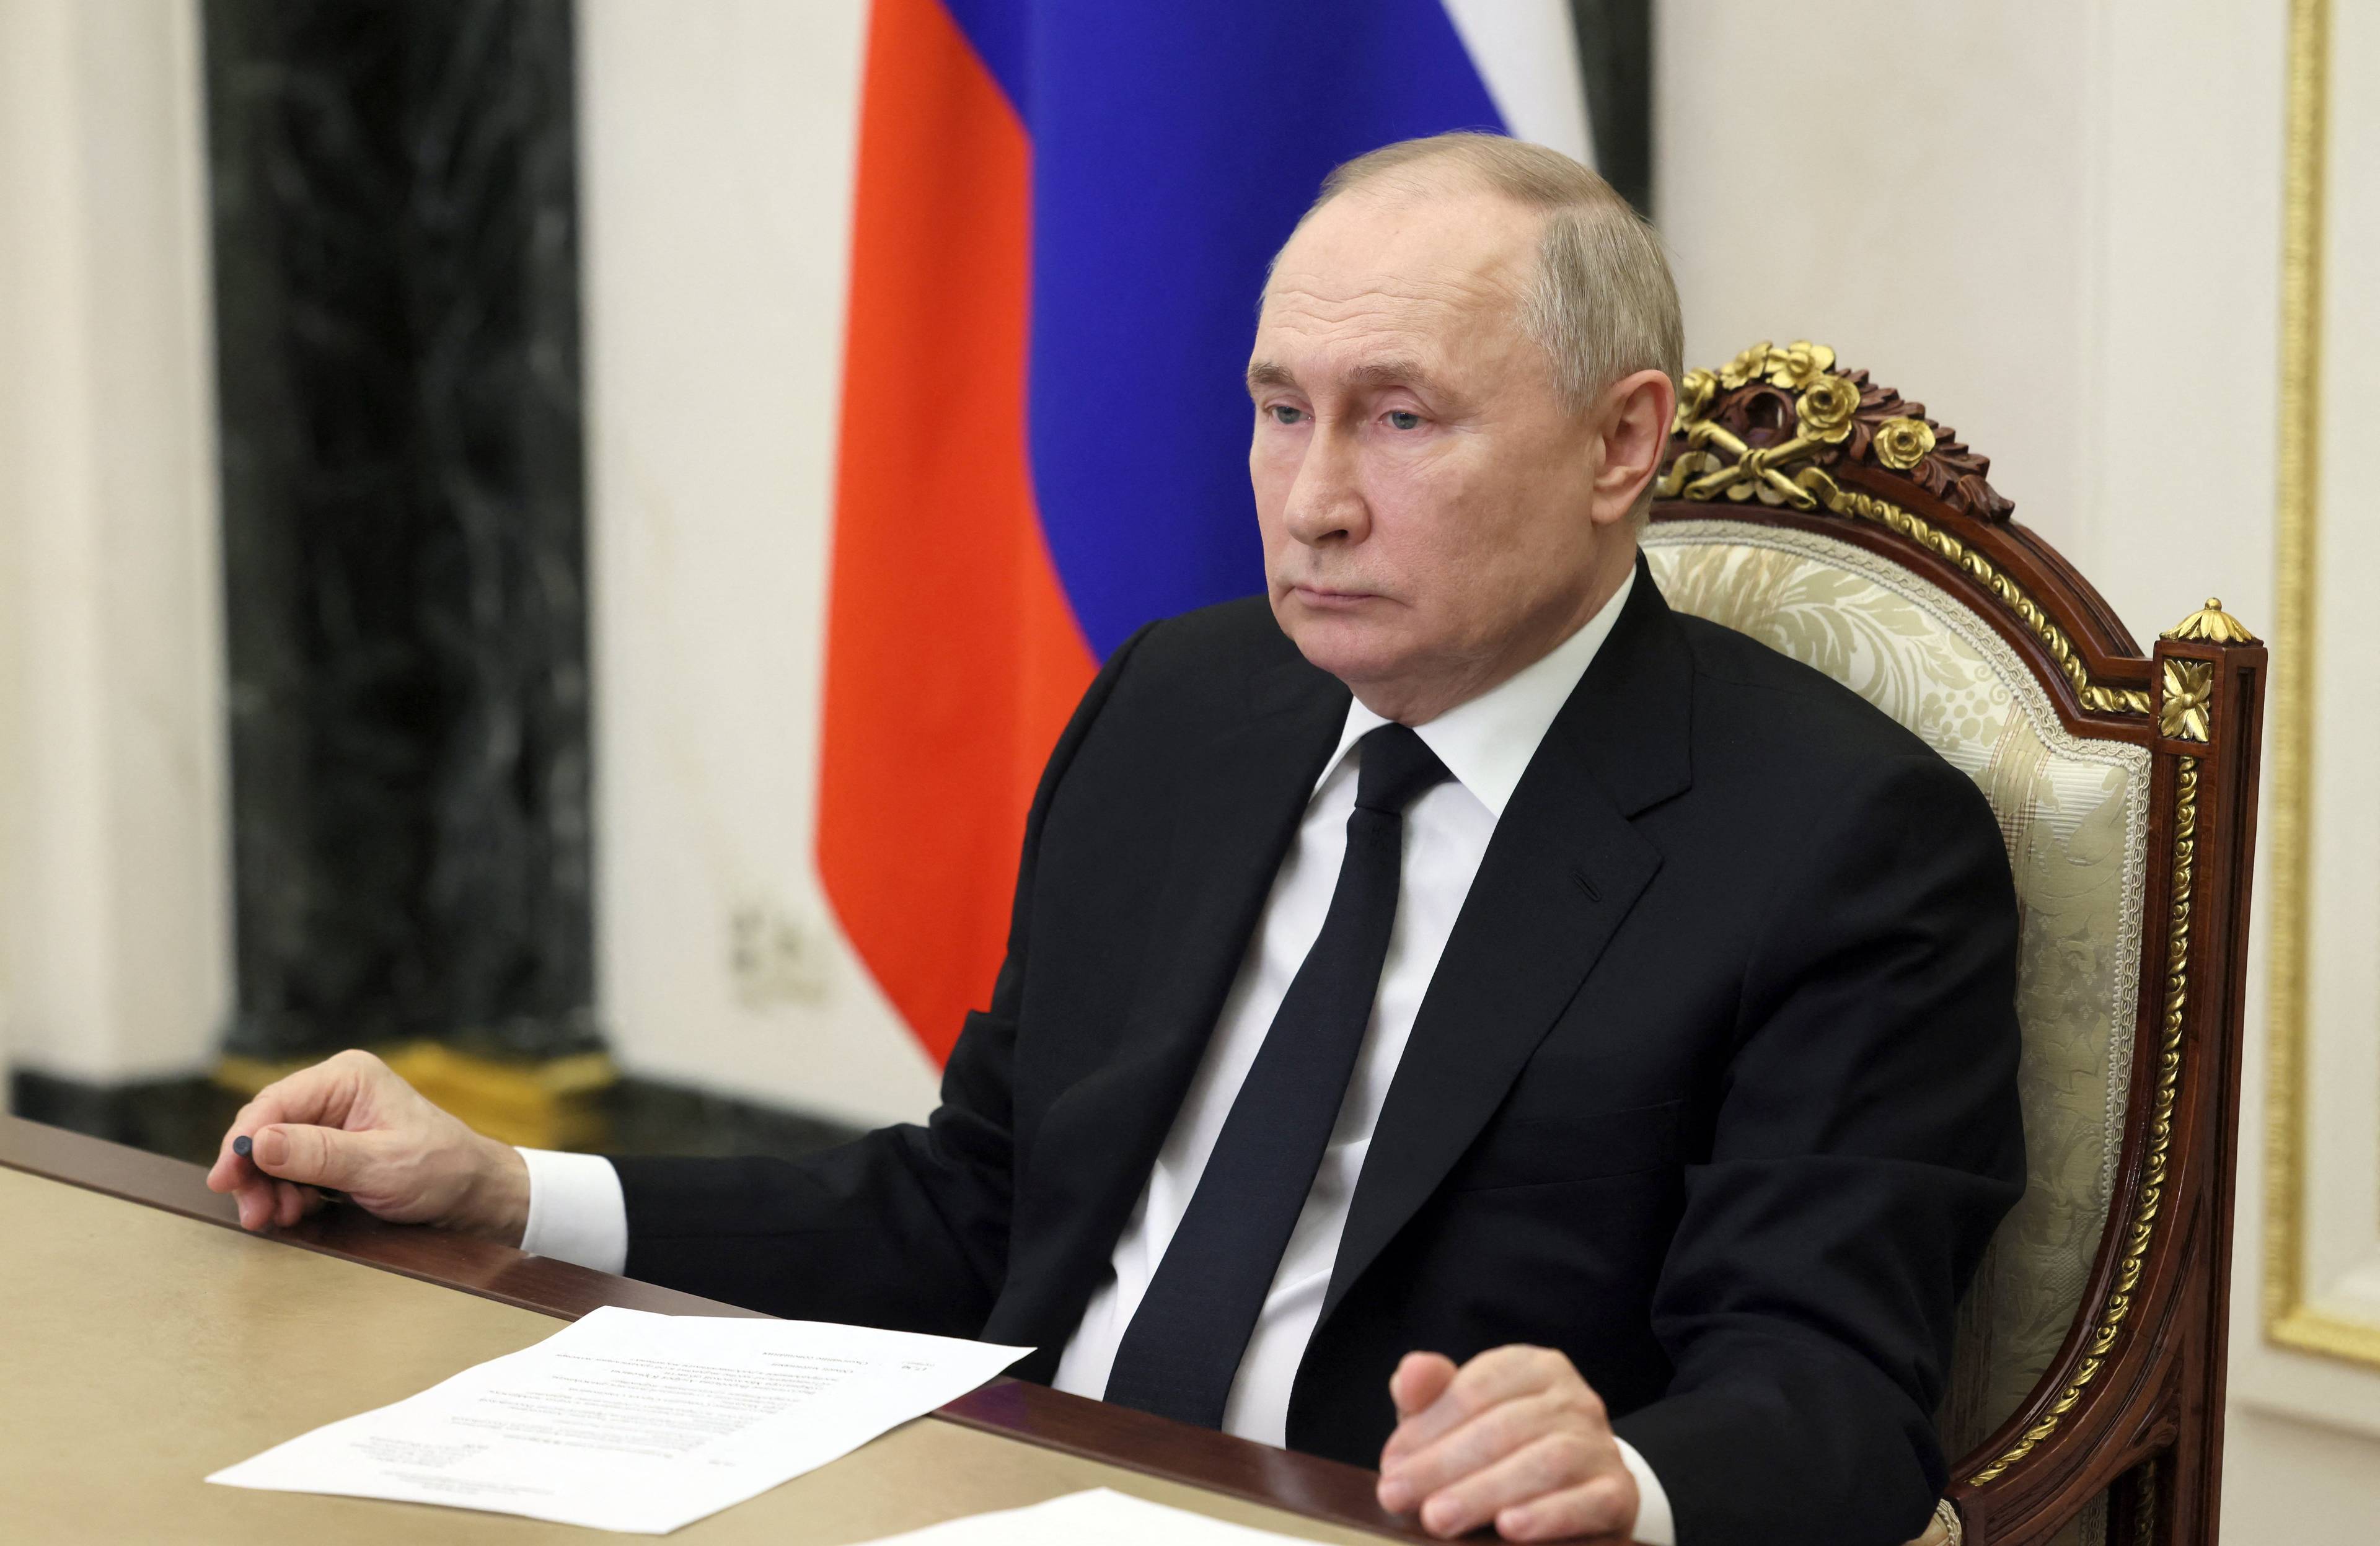 Władimir Putin siedzi za stołem